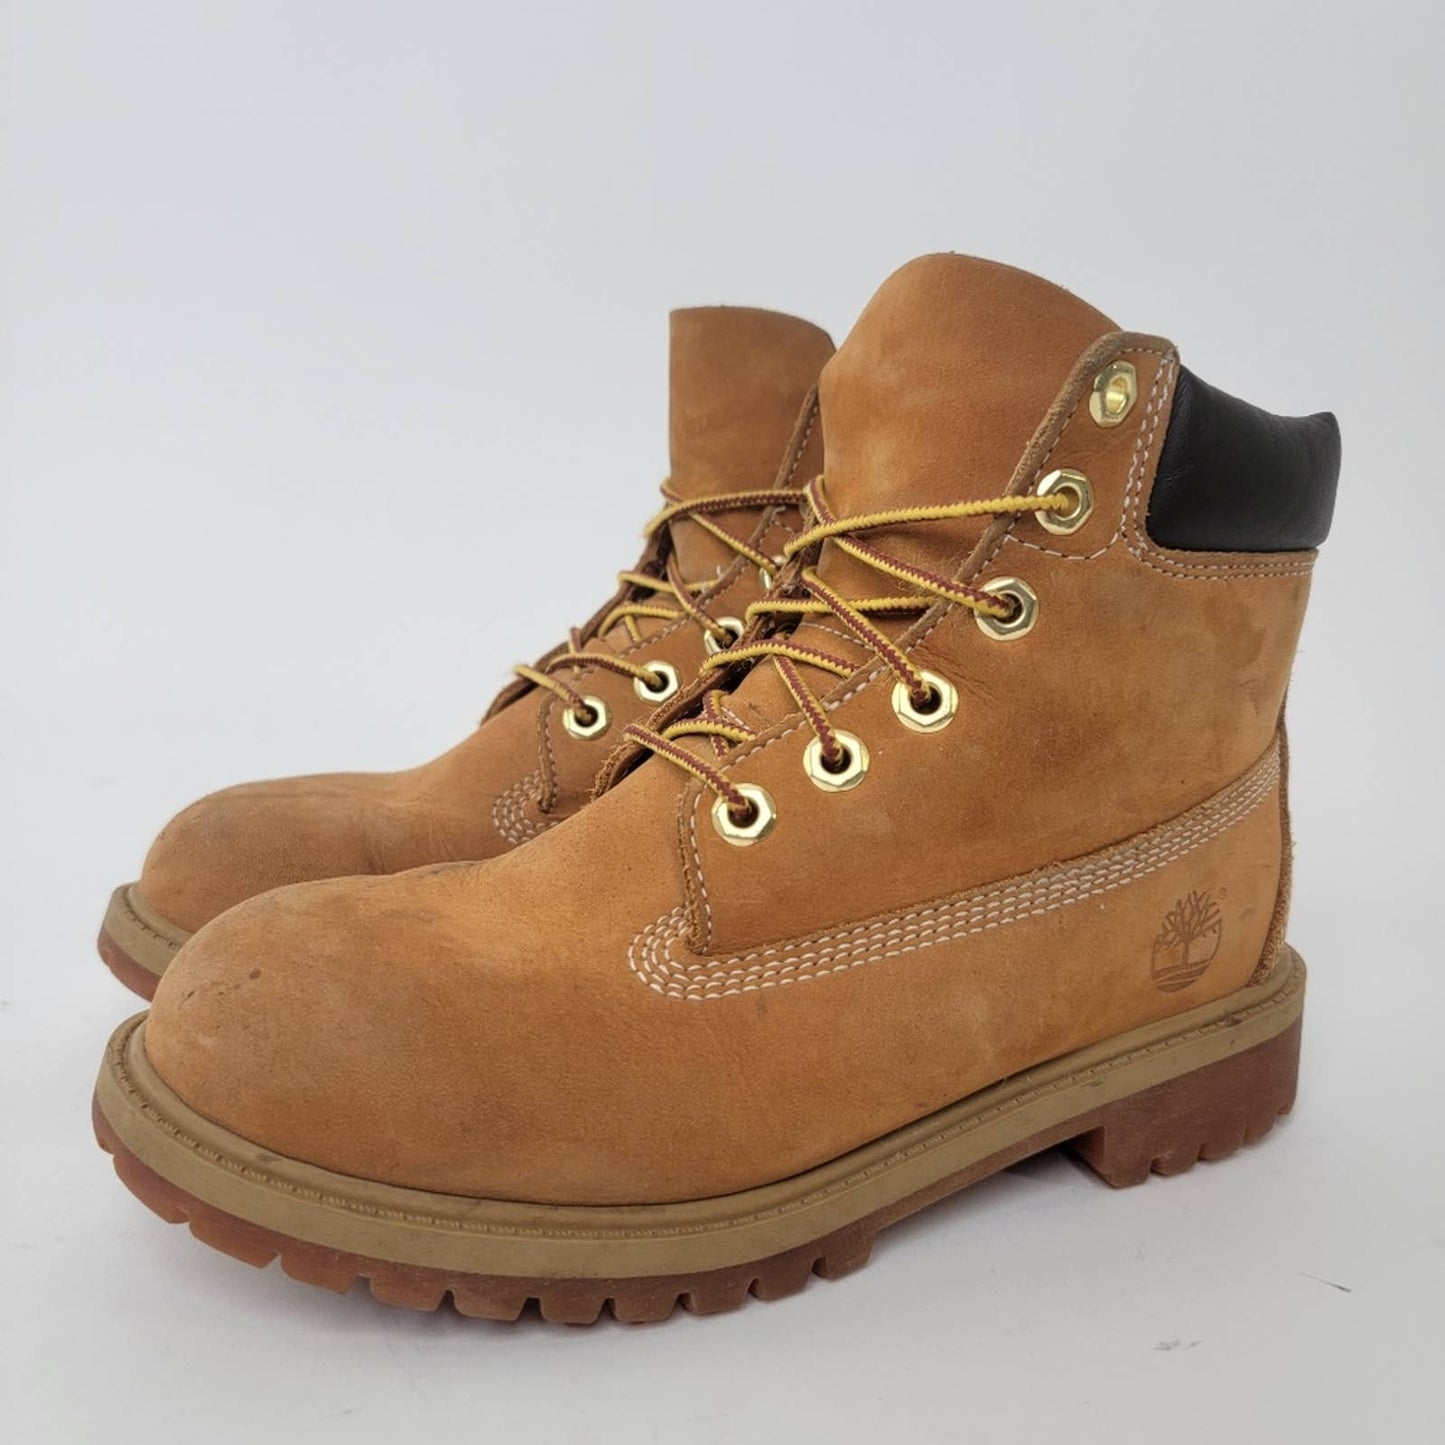 Timberland Premium Waterproof Boots